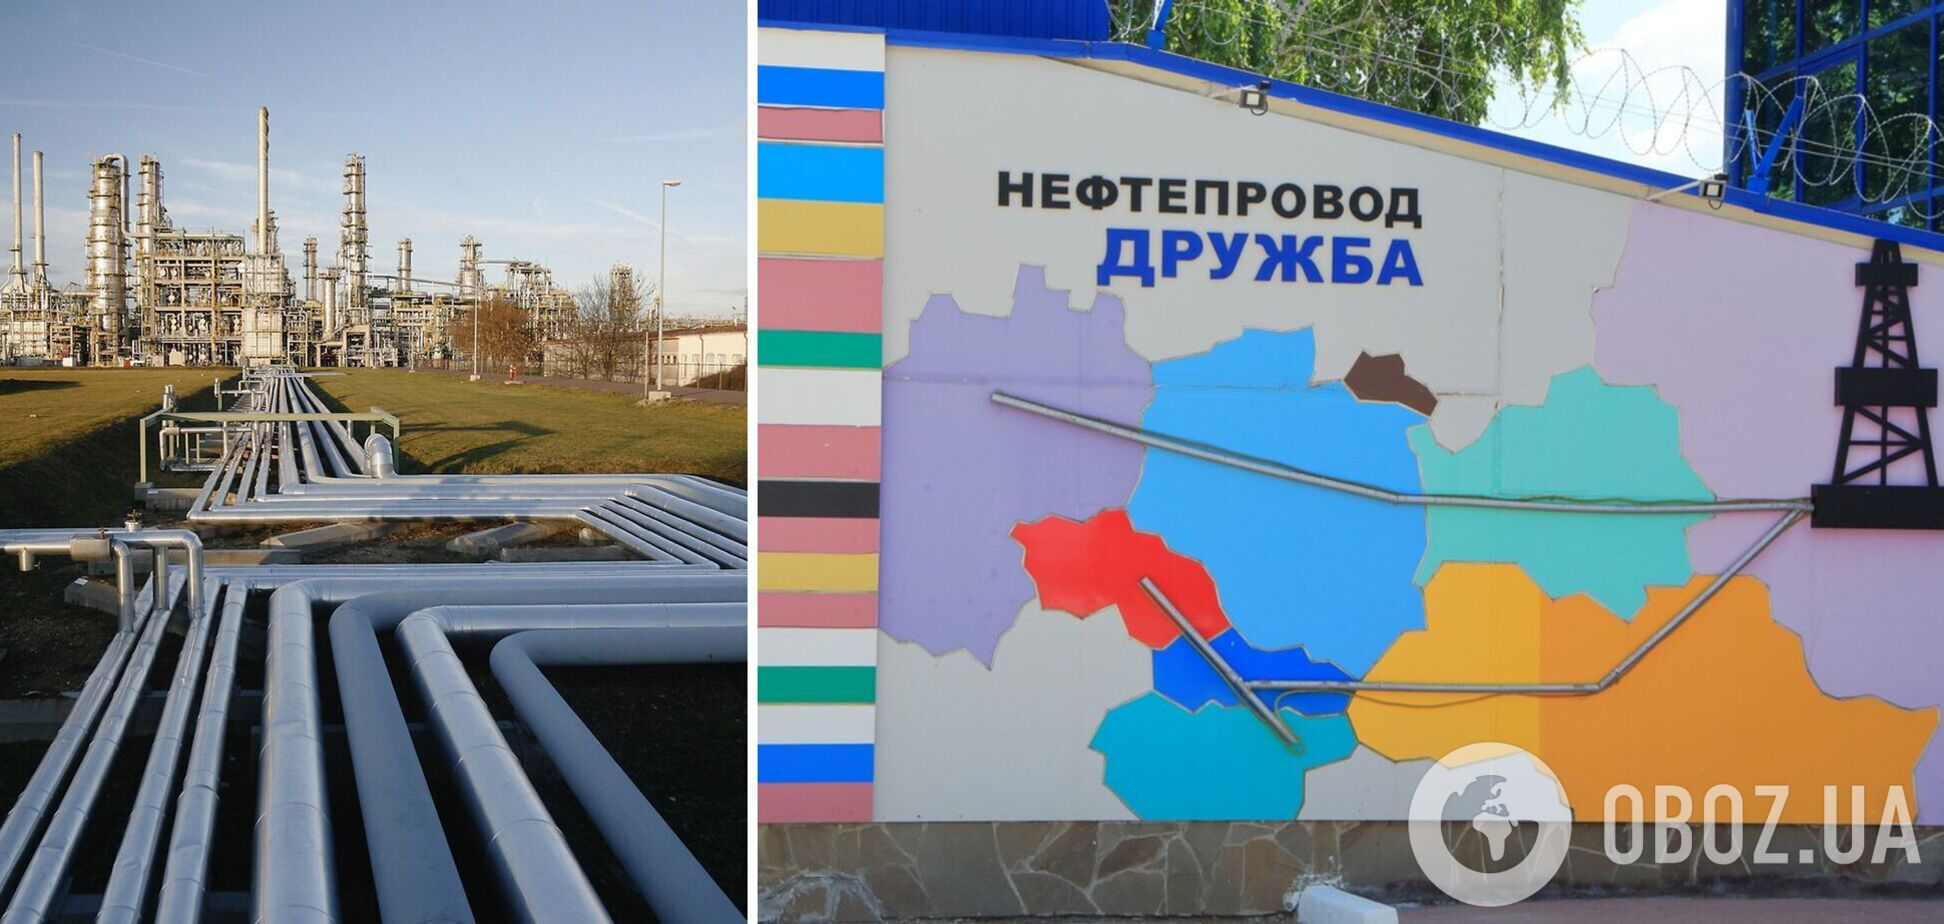 Россия перестала качать нефть по 'Дружбе' через Украину